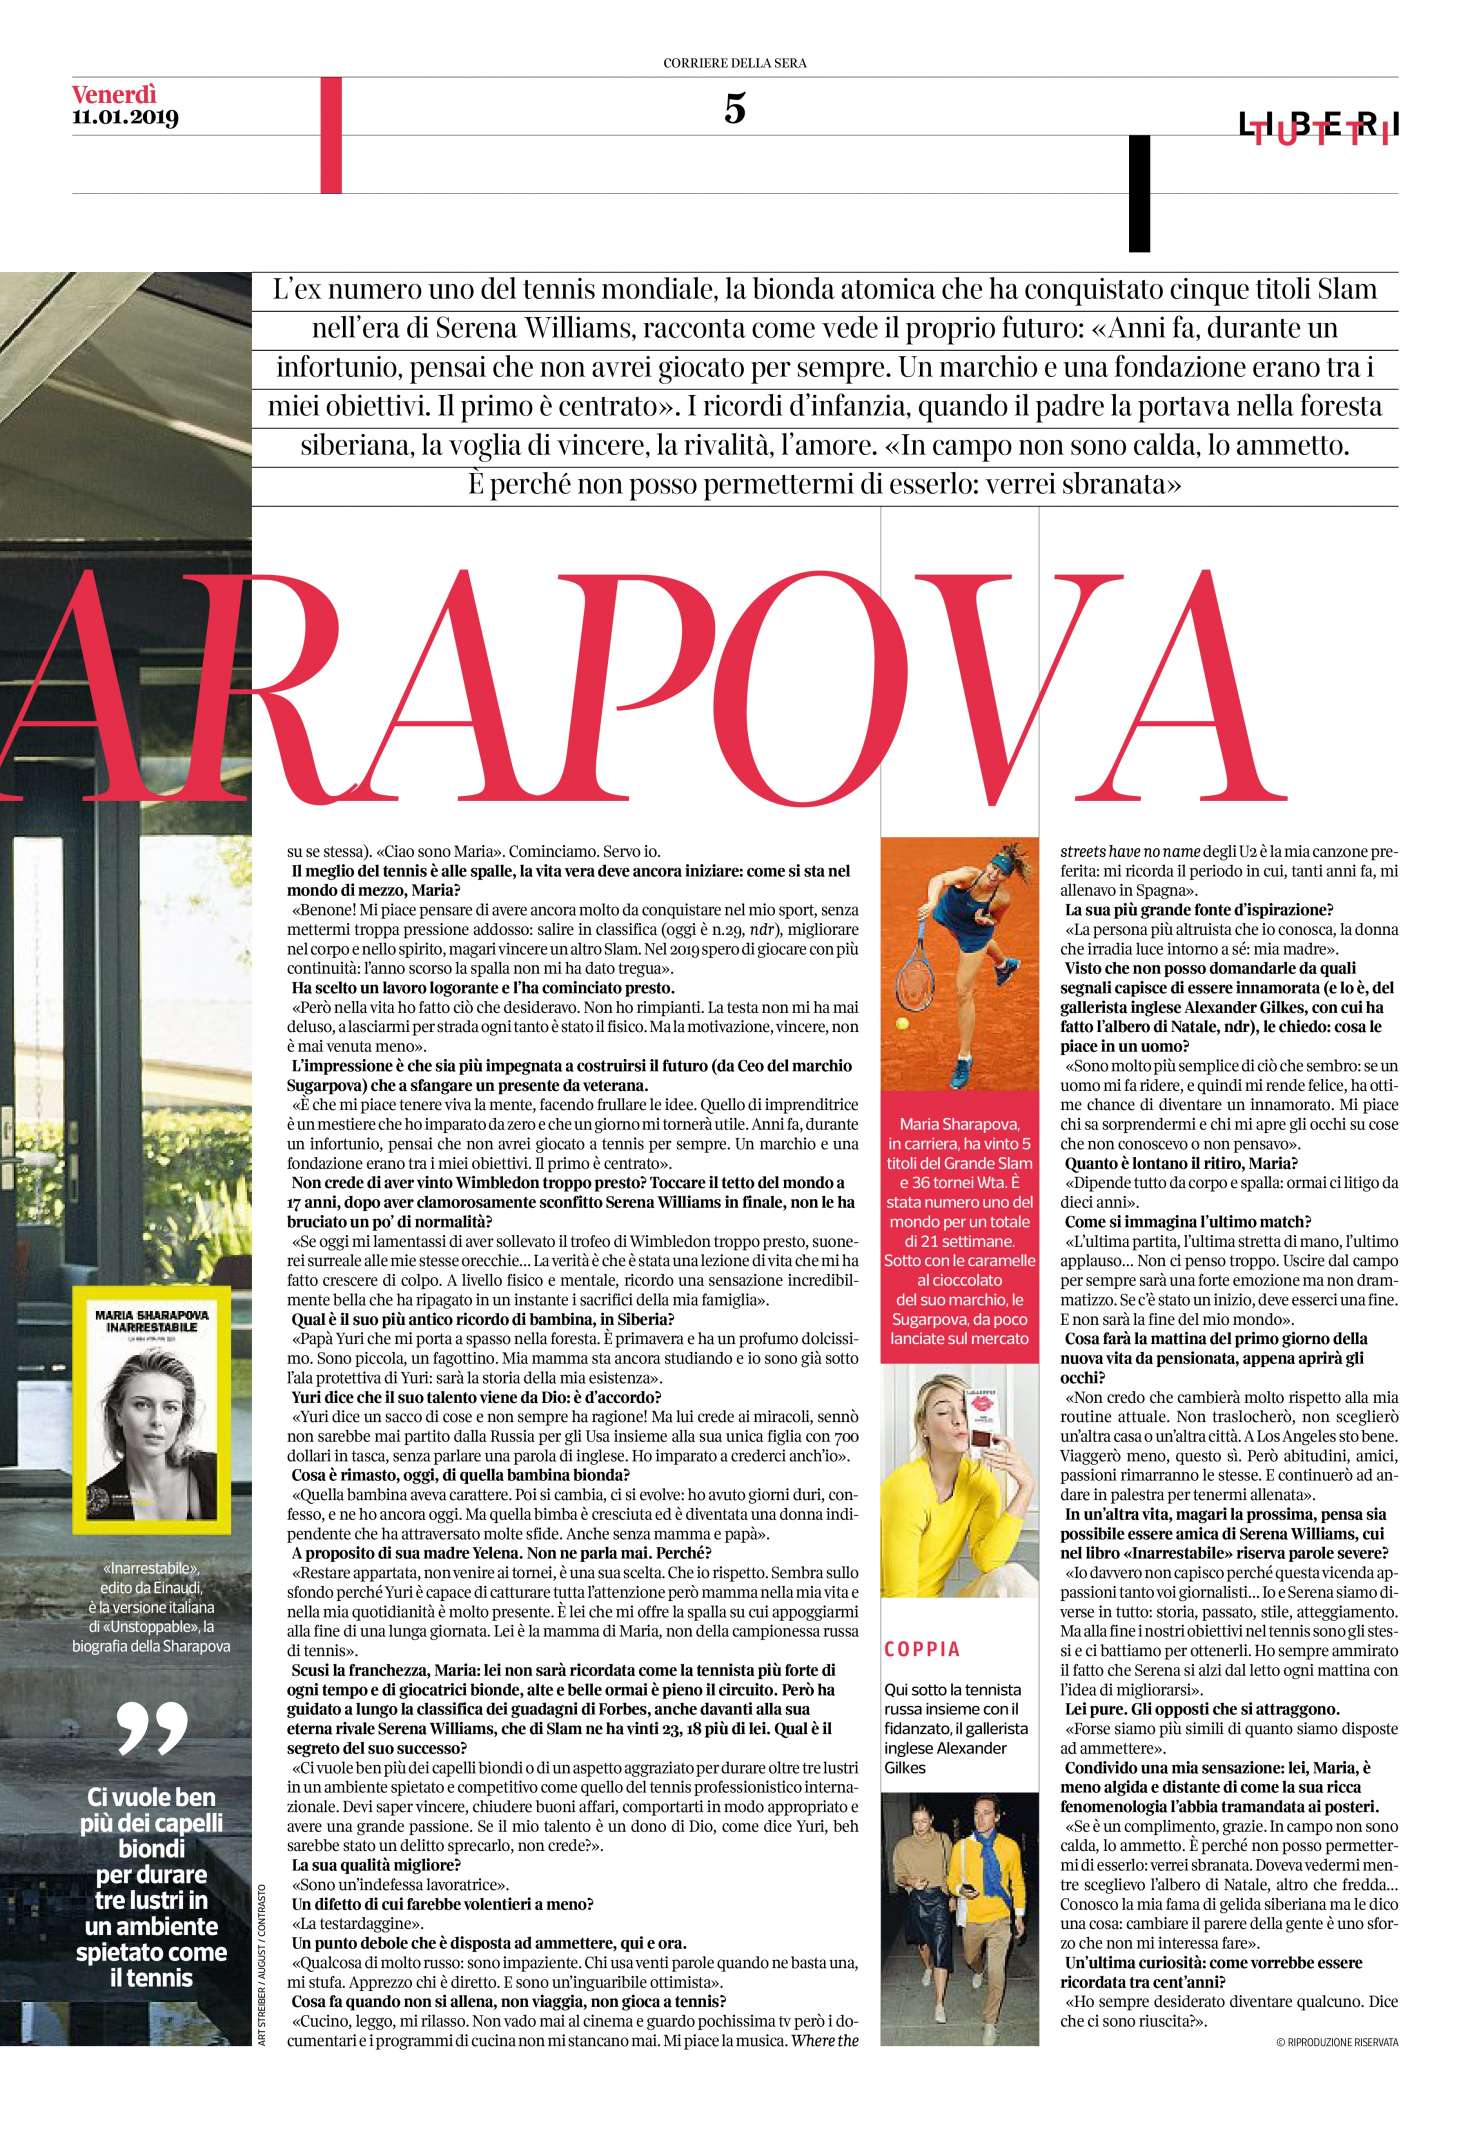 Maria Sharapova â€“ Corriere della Sera Liberi Tutti (January 2019)